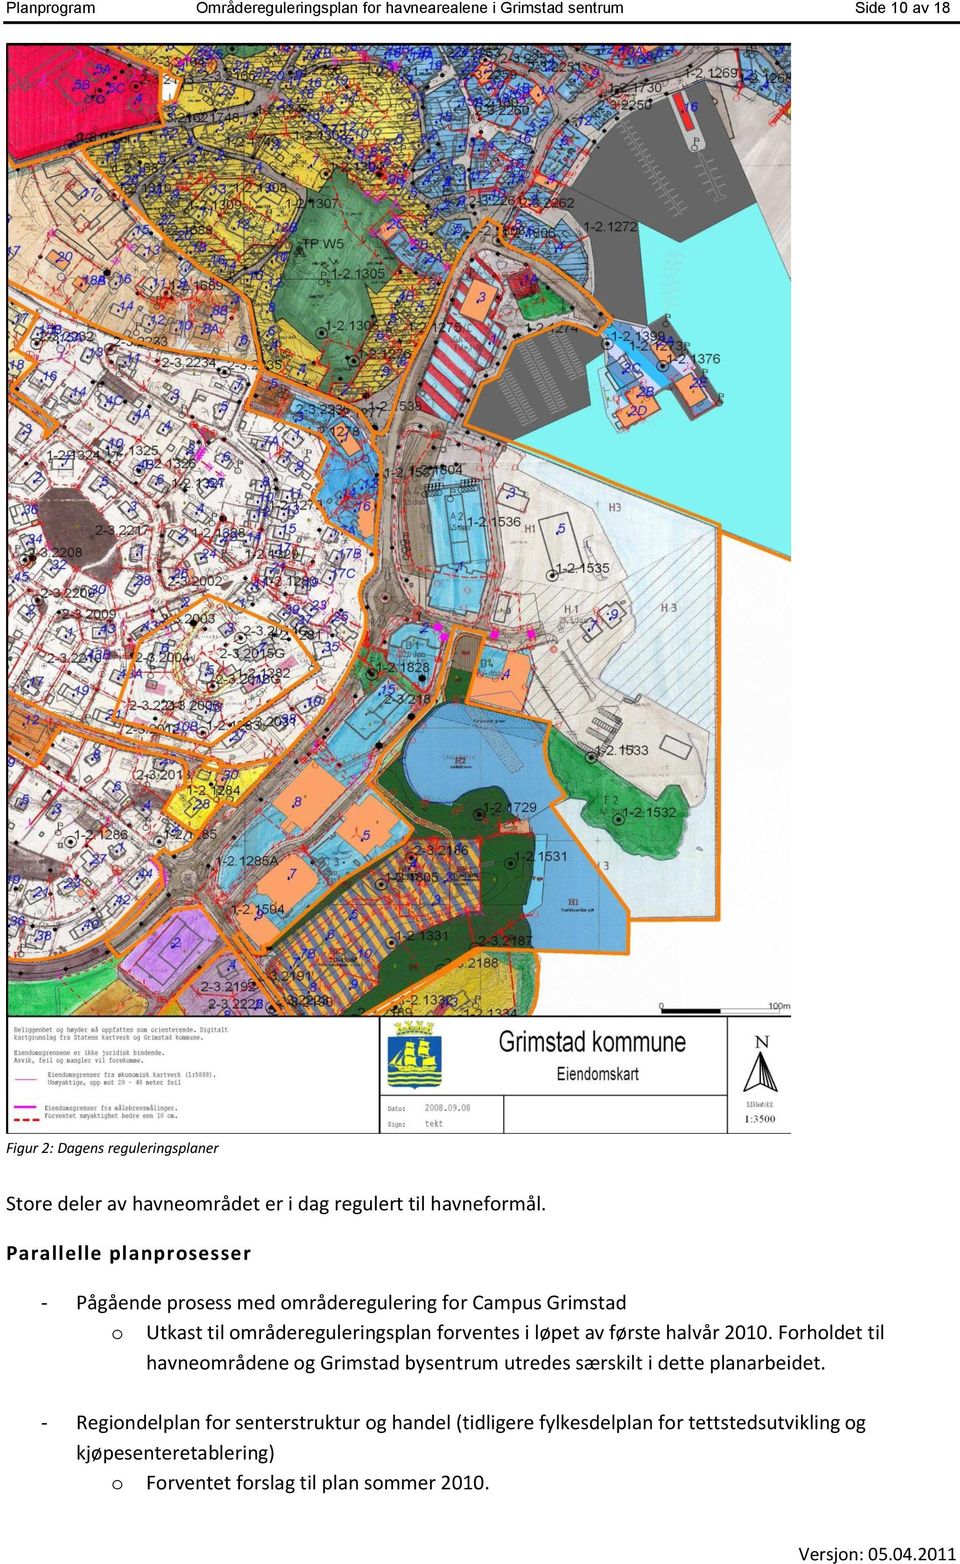 Parallelle planprosesser - Pågående prosess med områderegulering for Campus Grimstad o Utkast til områdereguleringsplan forventes i løpet av første